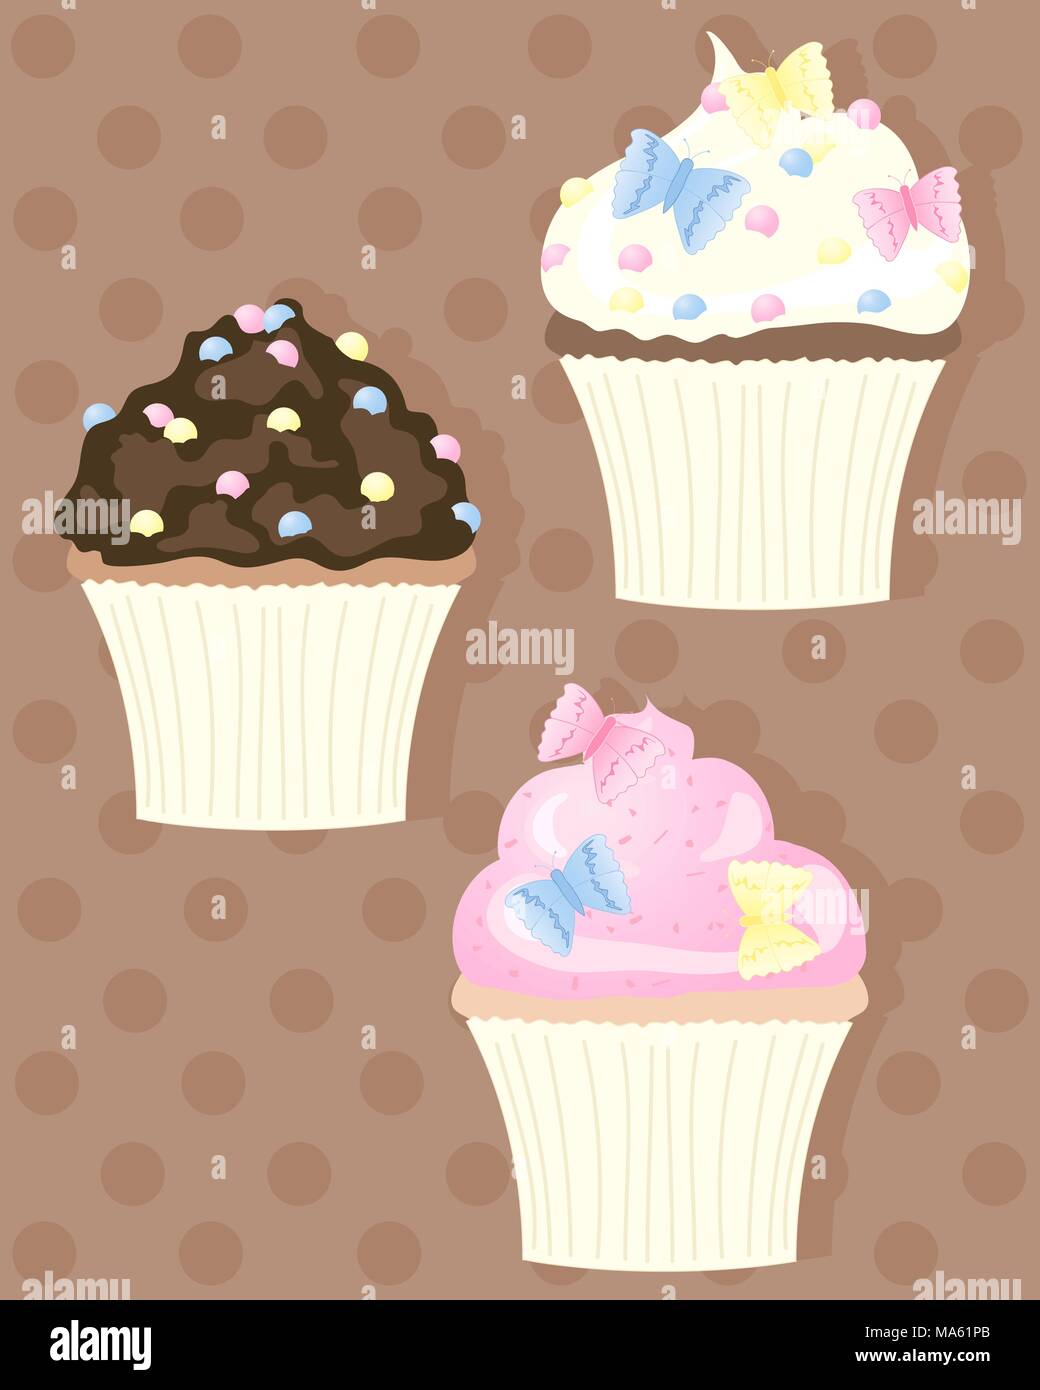 Un vecteur illustration en format eps 10 de trois petits gâteaux décorés de papillons et saupoudre sur un fond chocolat dotty Illustration de Vecteur